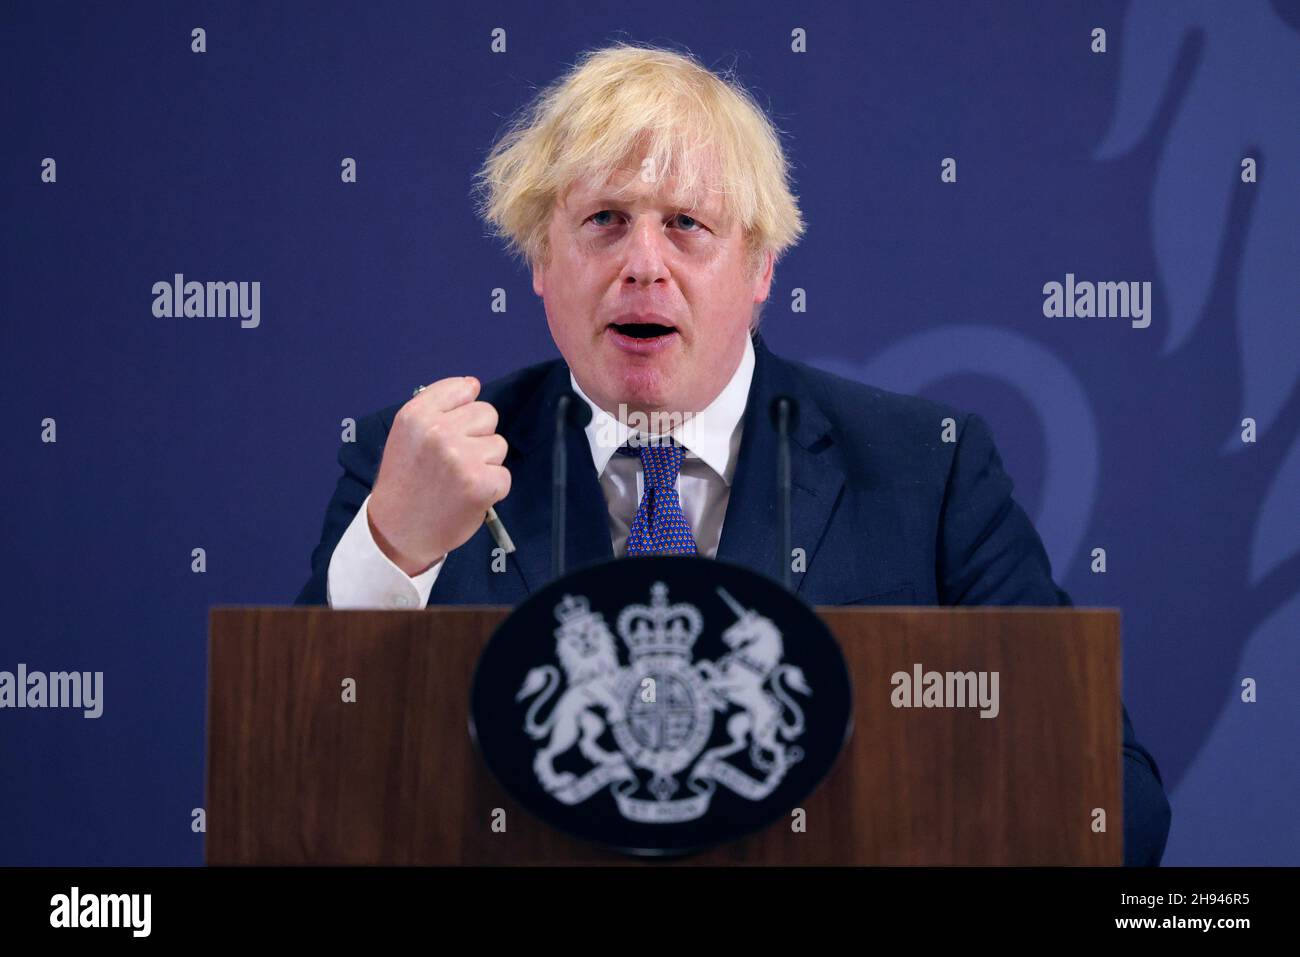 COVENTRY, ANGLETERRE, Royaume-Uni - 15 juillet 2021 - Premier ministre britannique Boris Johnson Leveling Up Speech.Le Premier ministre Boris Johnson visite l'UKBIC pour lui fournir un Banque D'Images